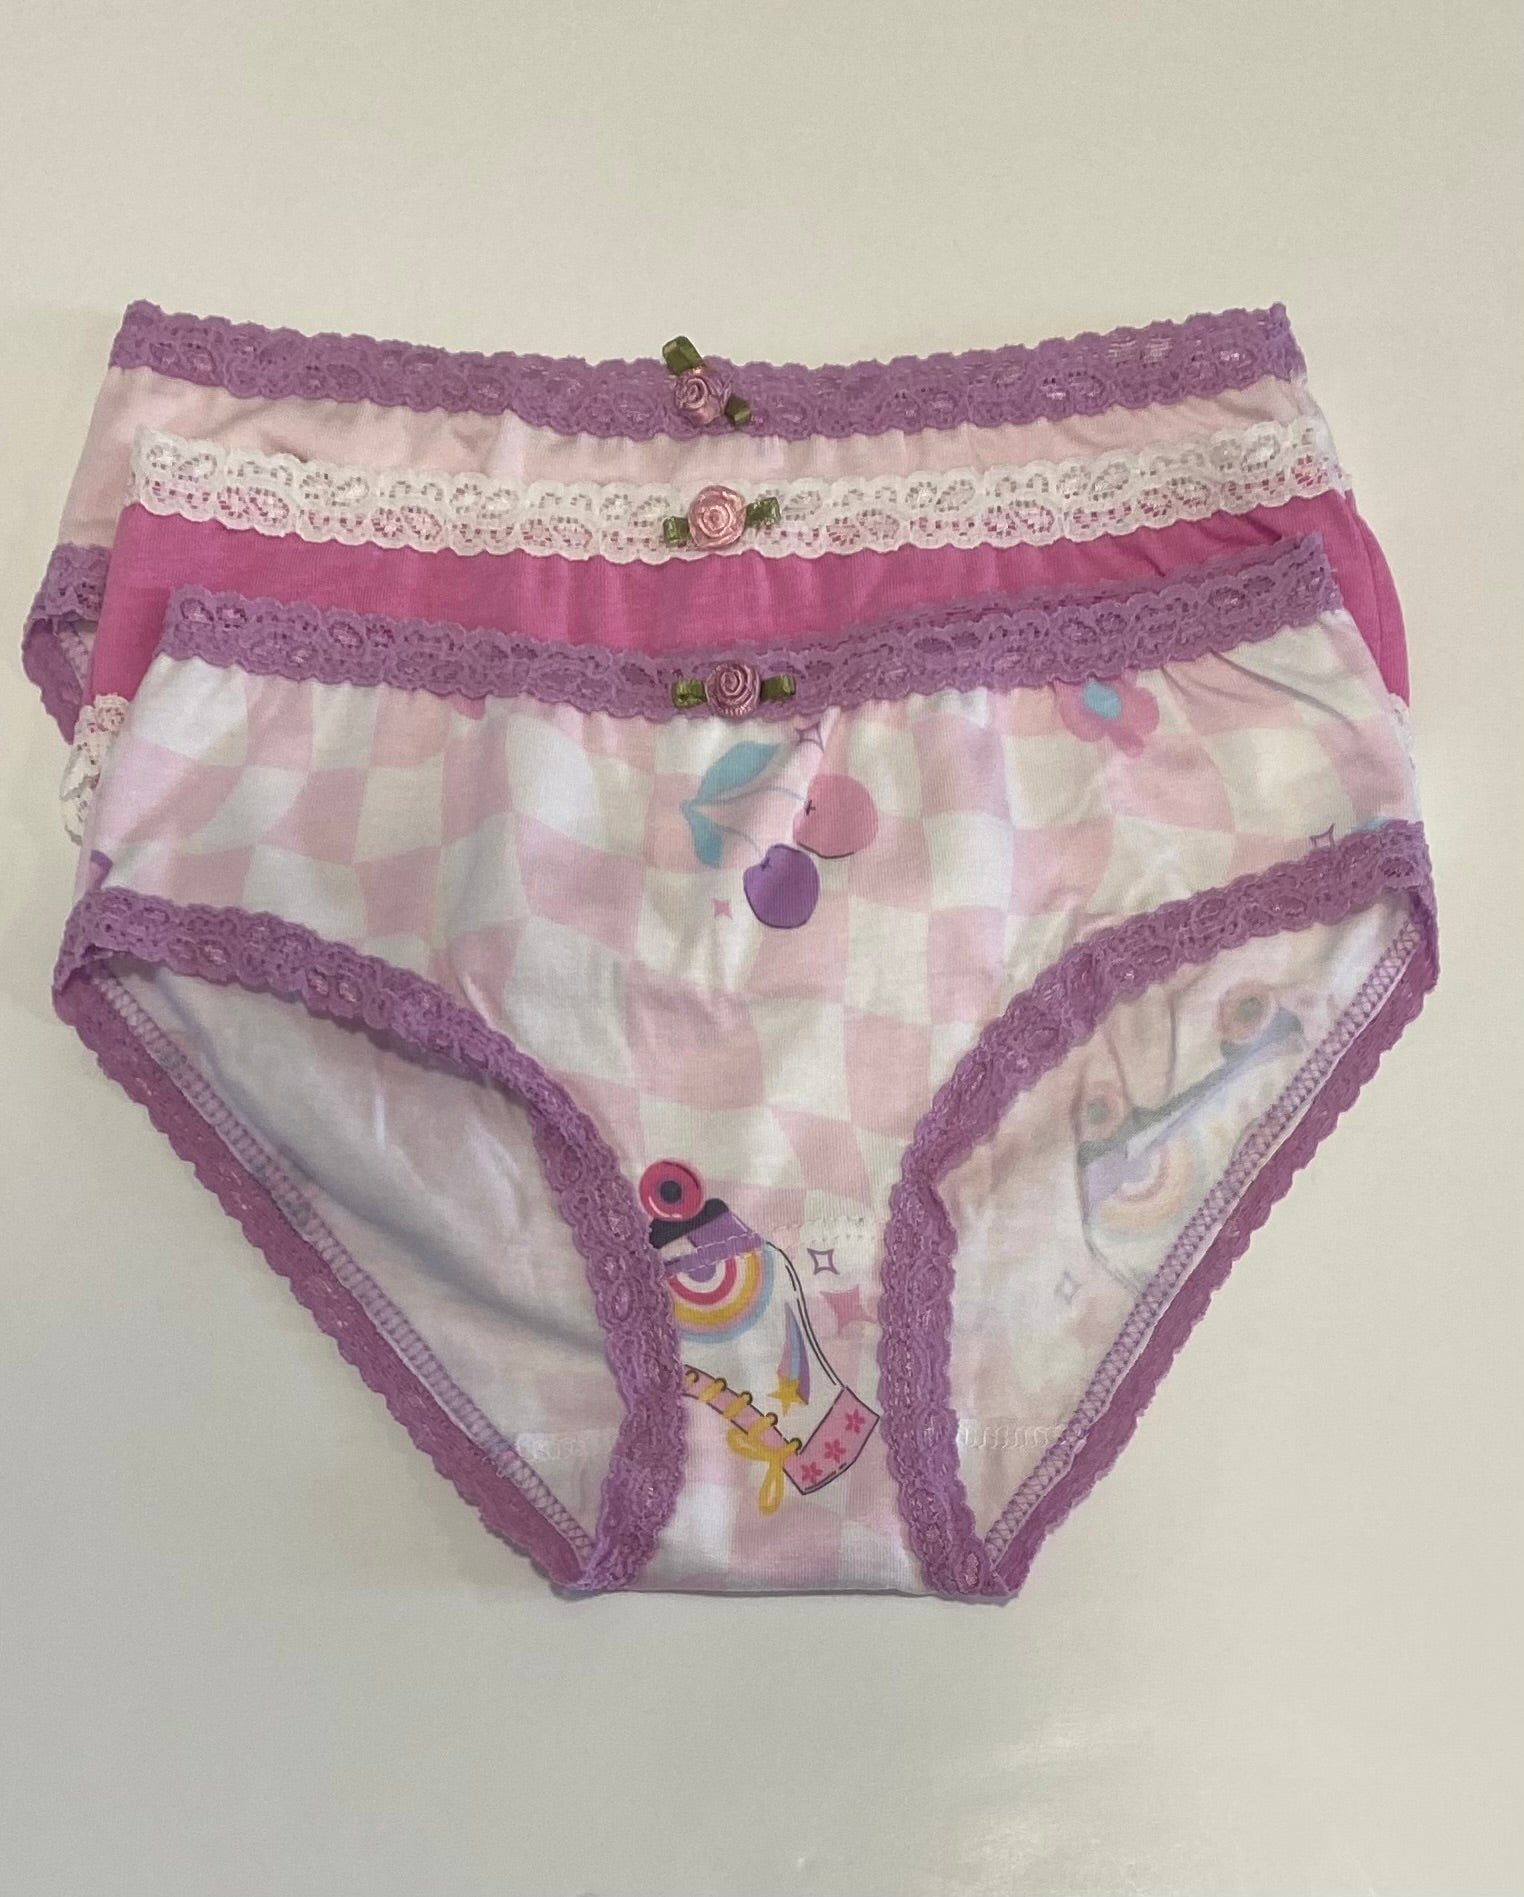 PN-03 Medium waist sexy cotton women's underwear-Shenzhen Weimeian  Technology Co., Ltd.